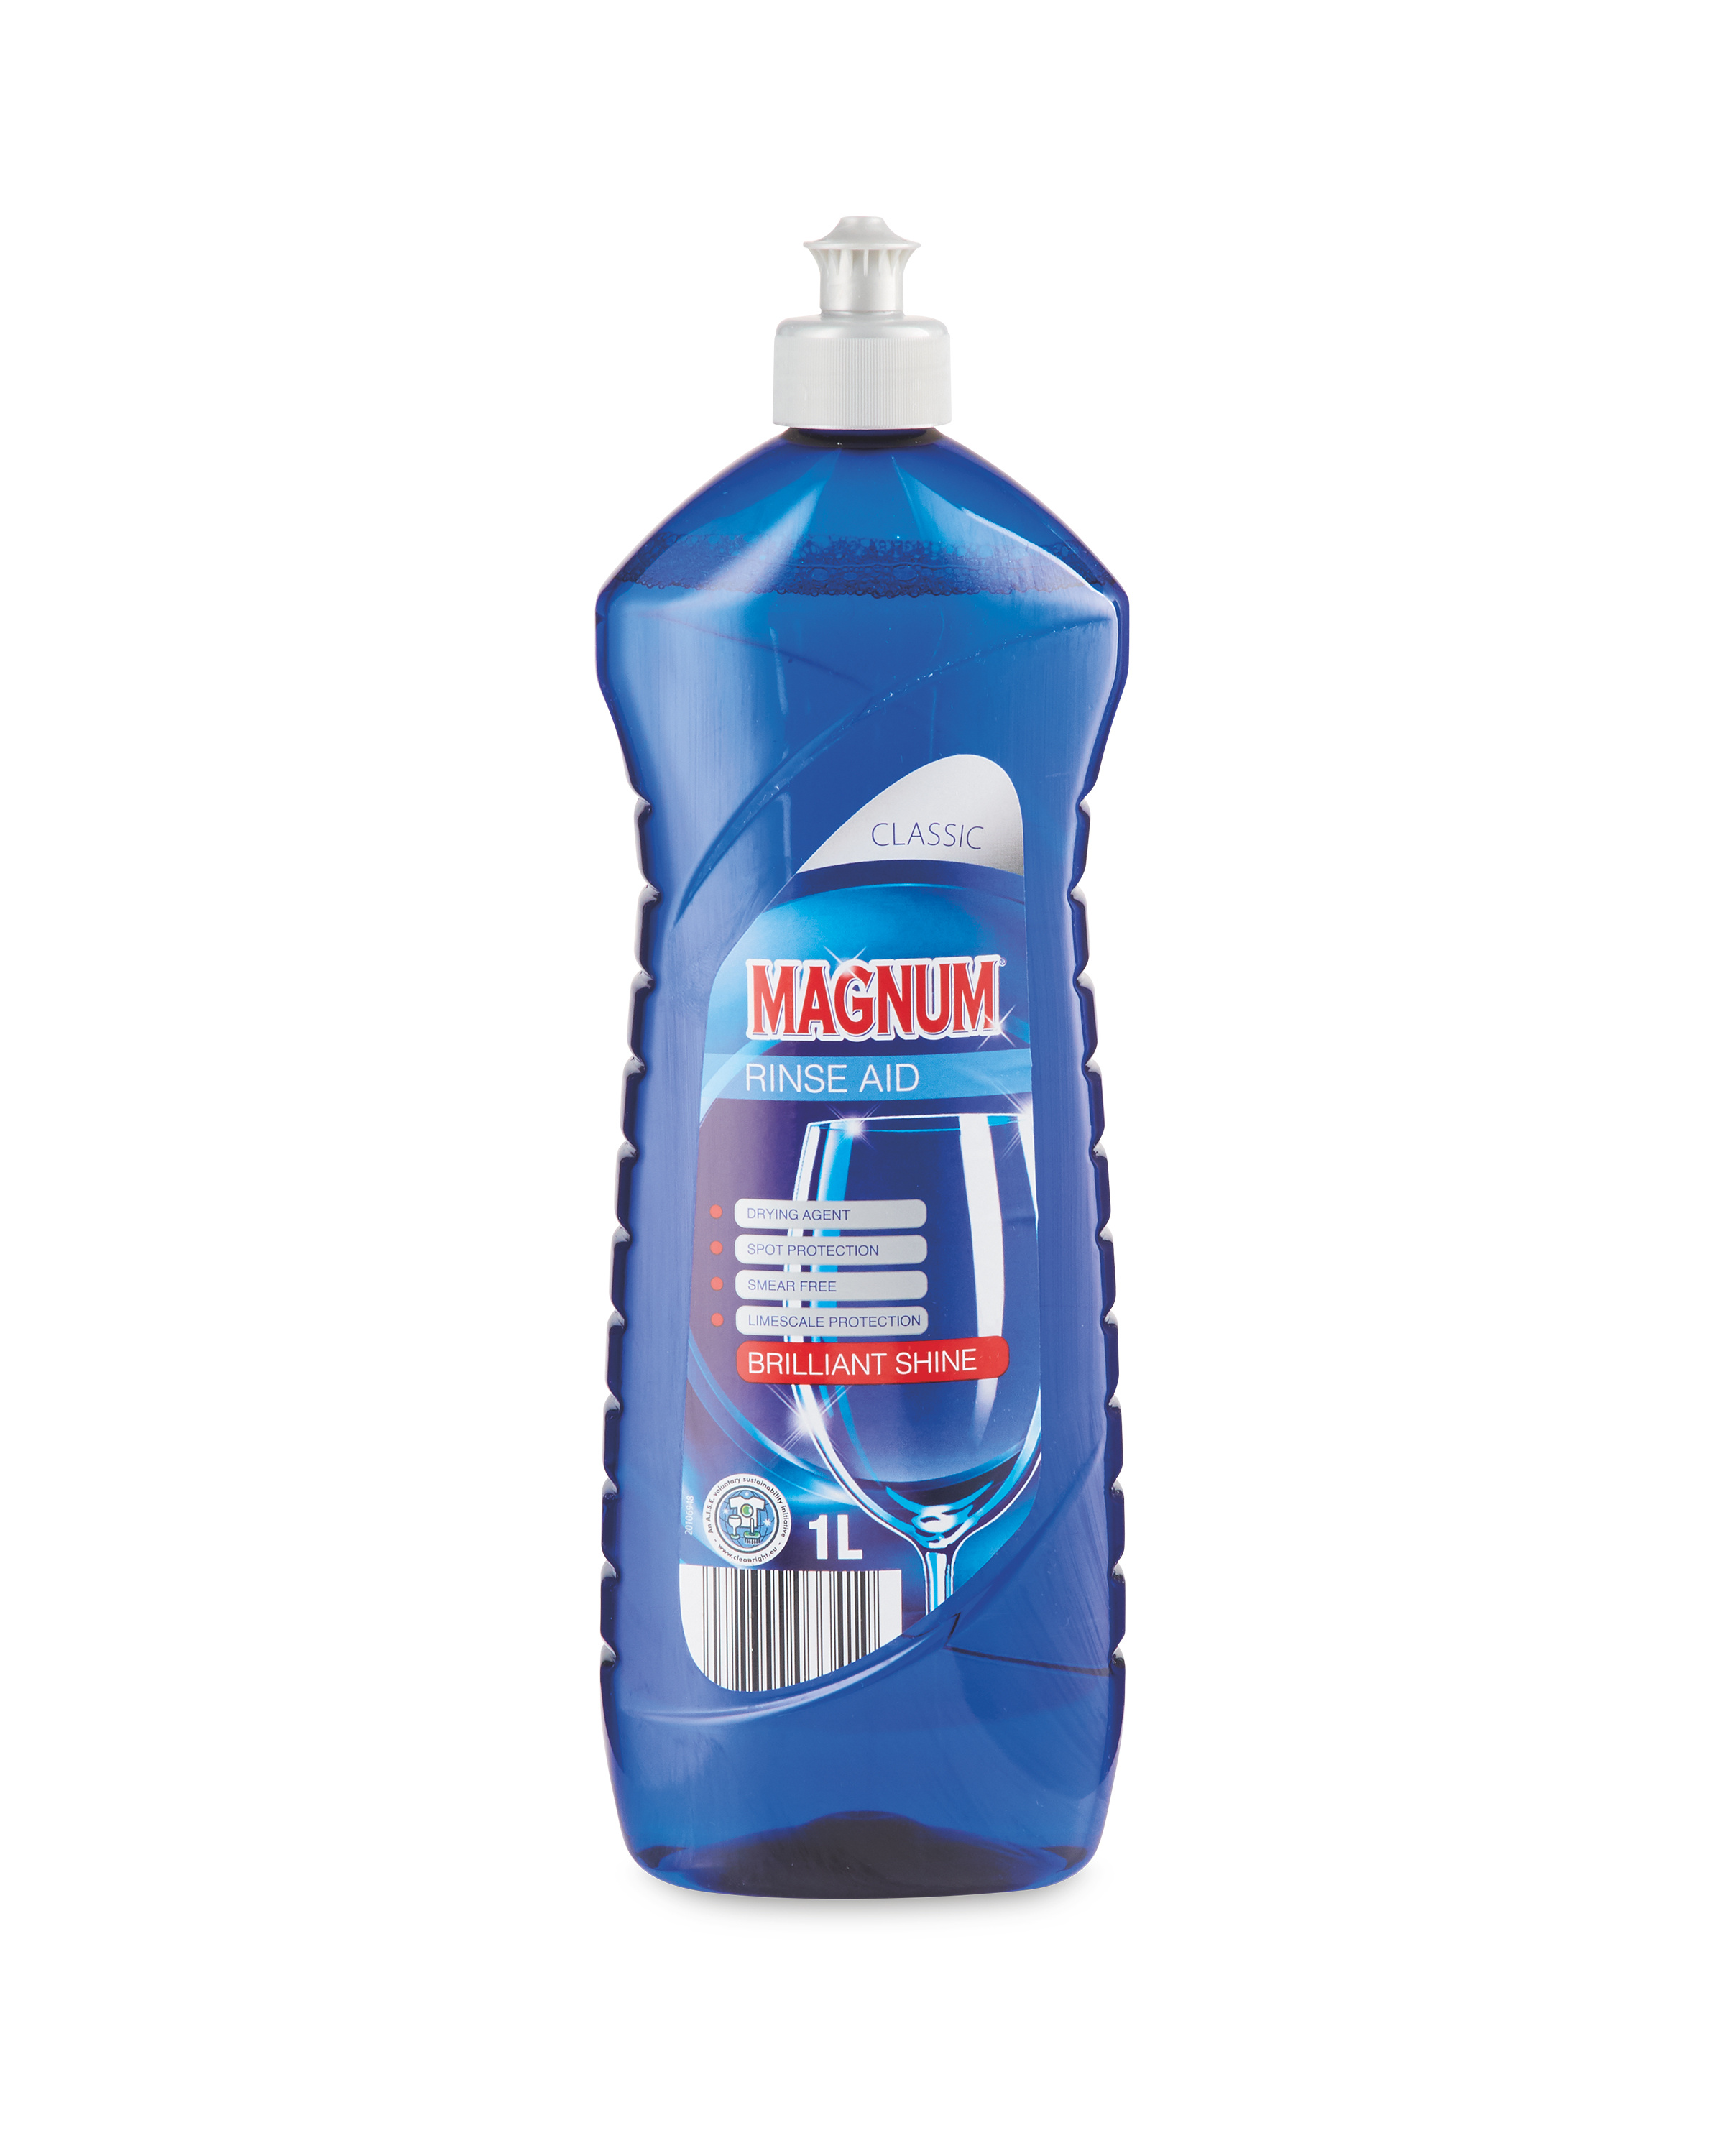 Magnum Rinse Aid Original 1L - ALDI UK